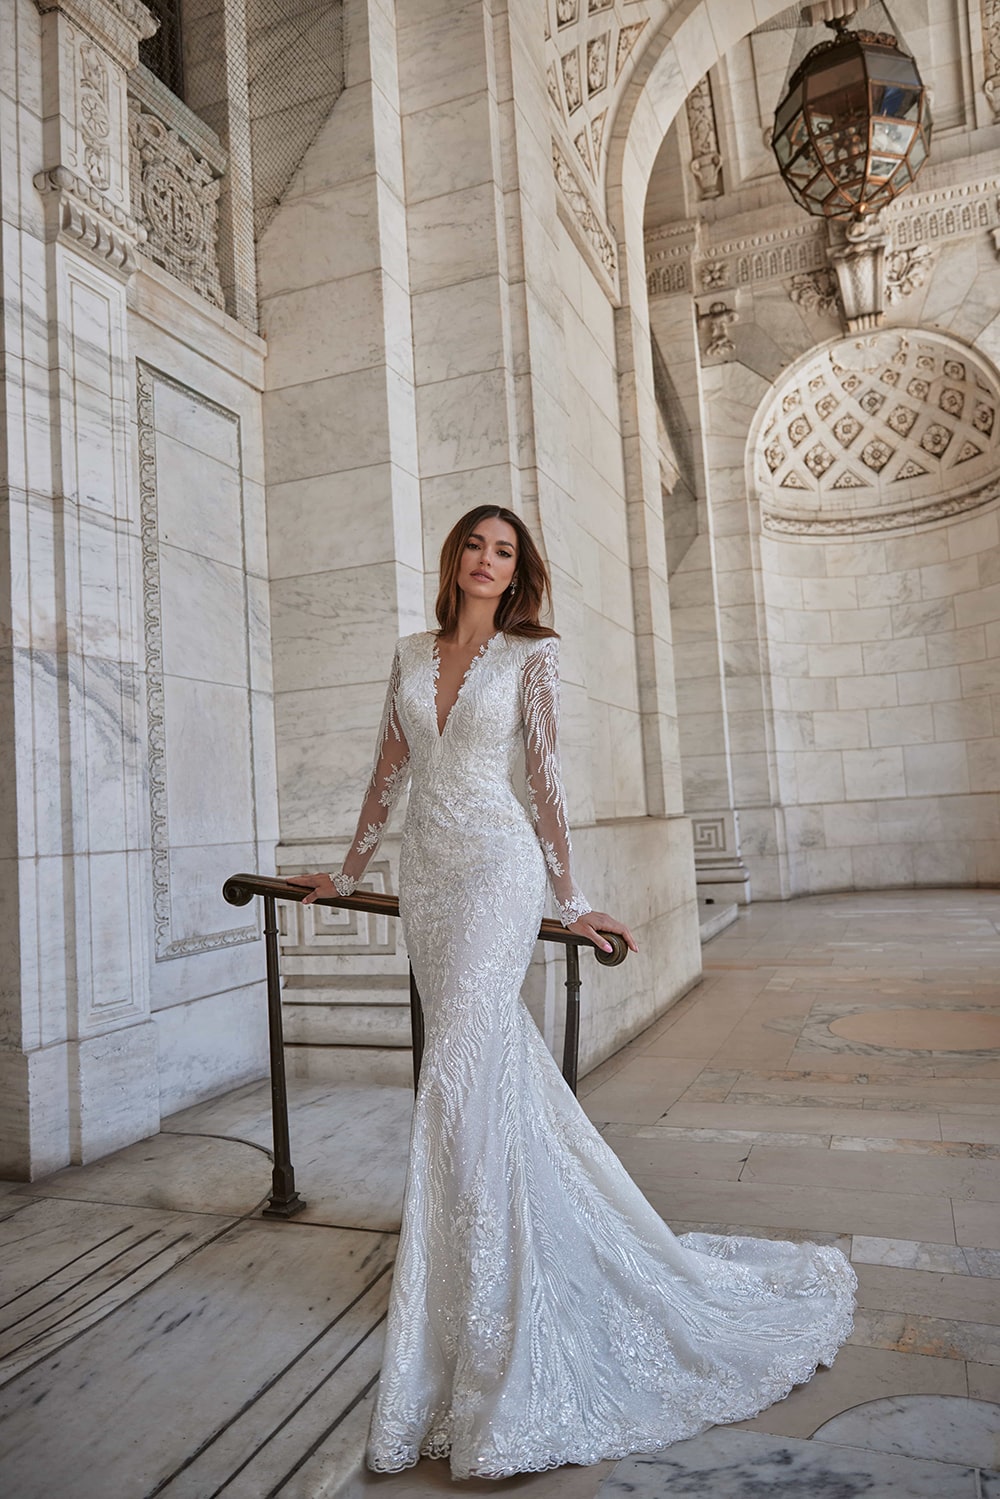 Jordan menyasszonyi ruha - Woná Concept